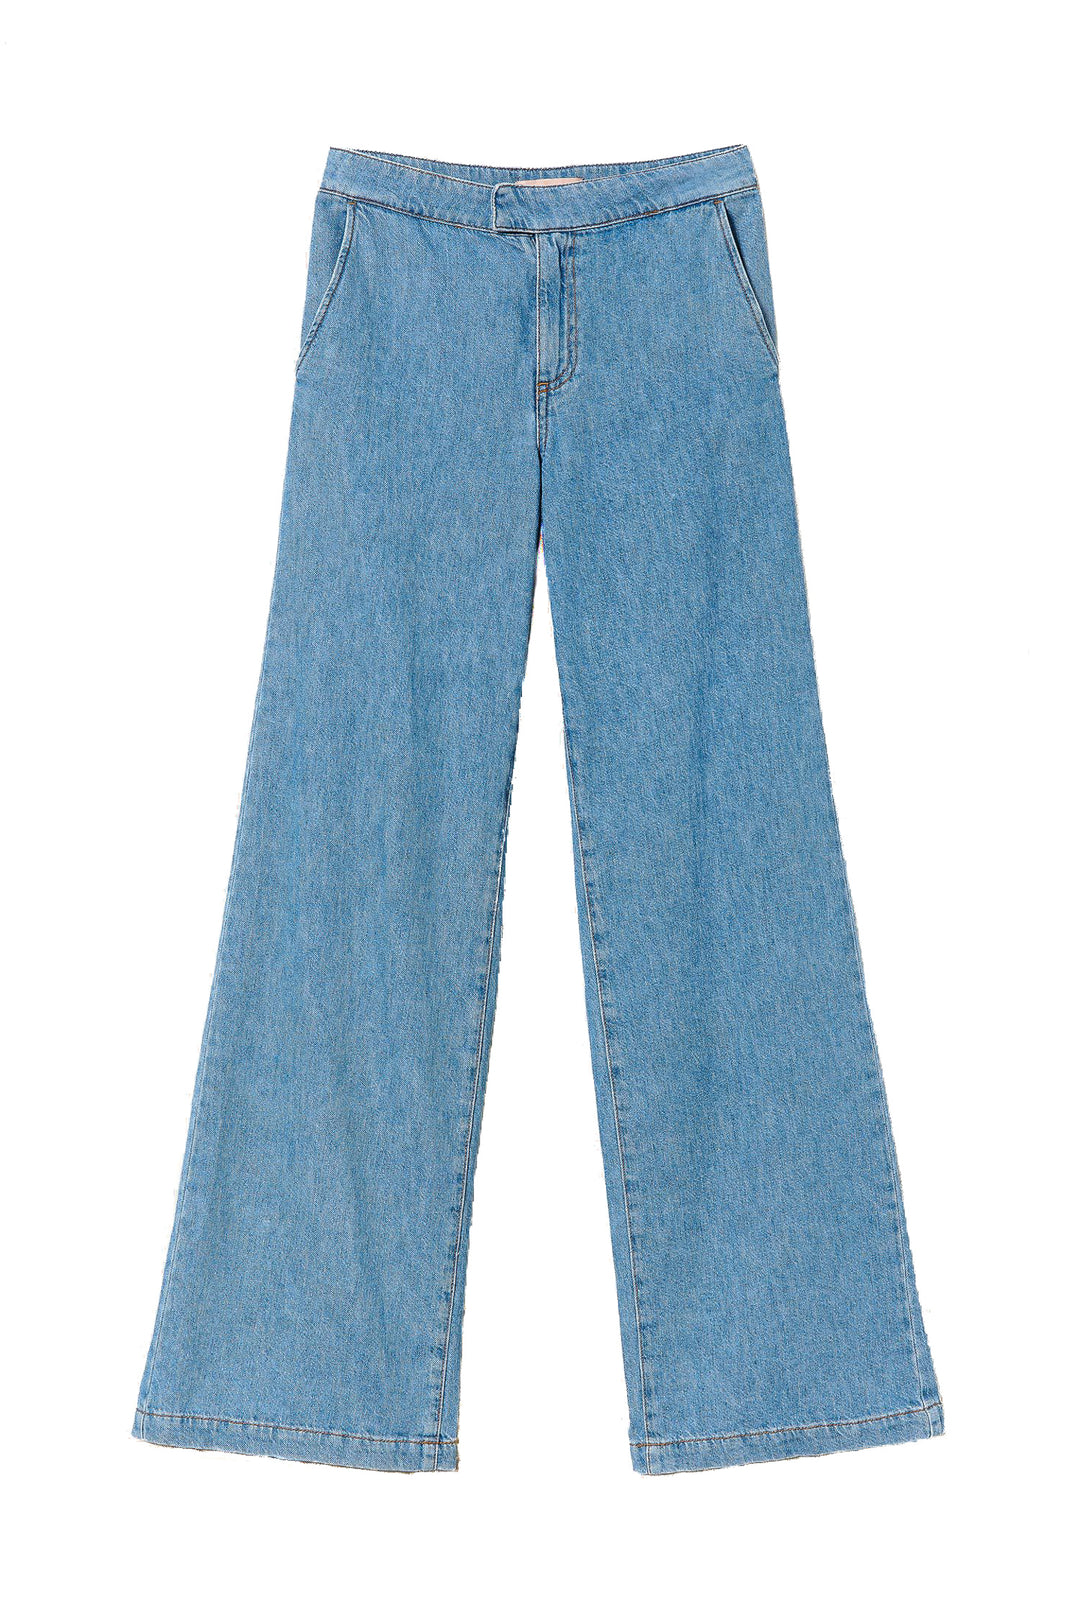 TWINSET Jeans wide leg in denim stonewash con vita regular - Mancinelli 1954